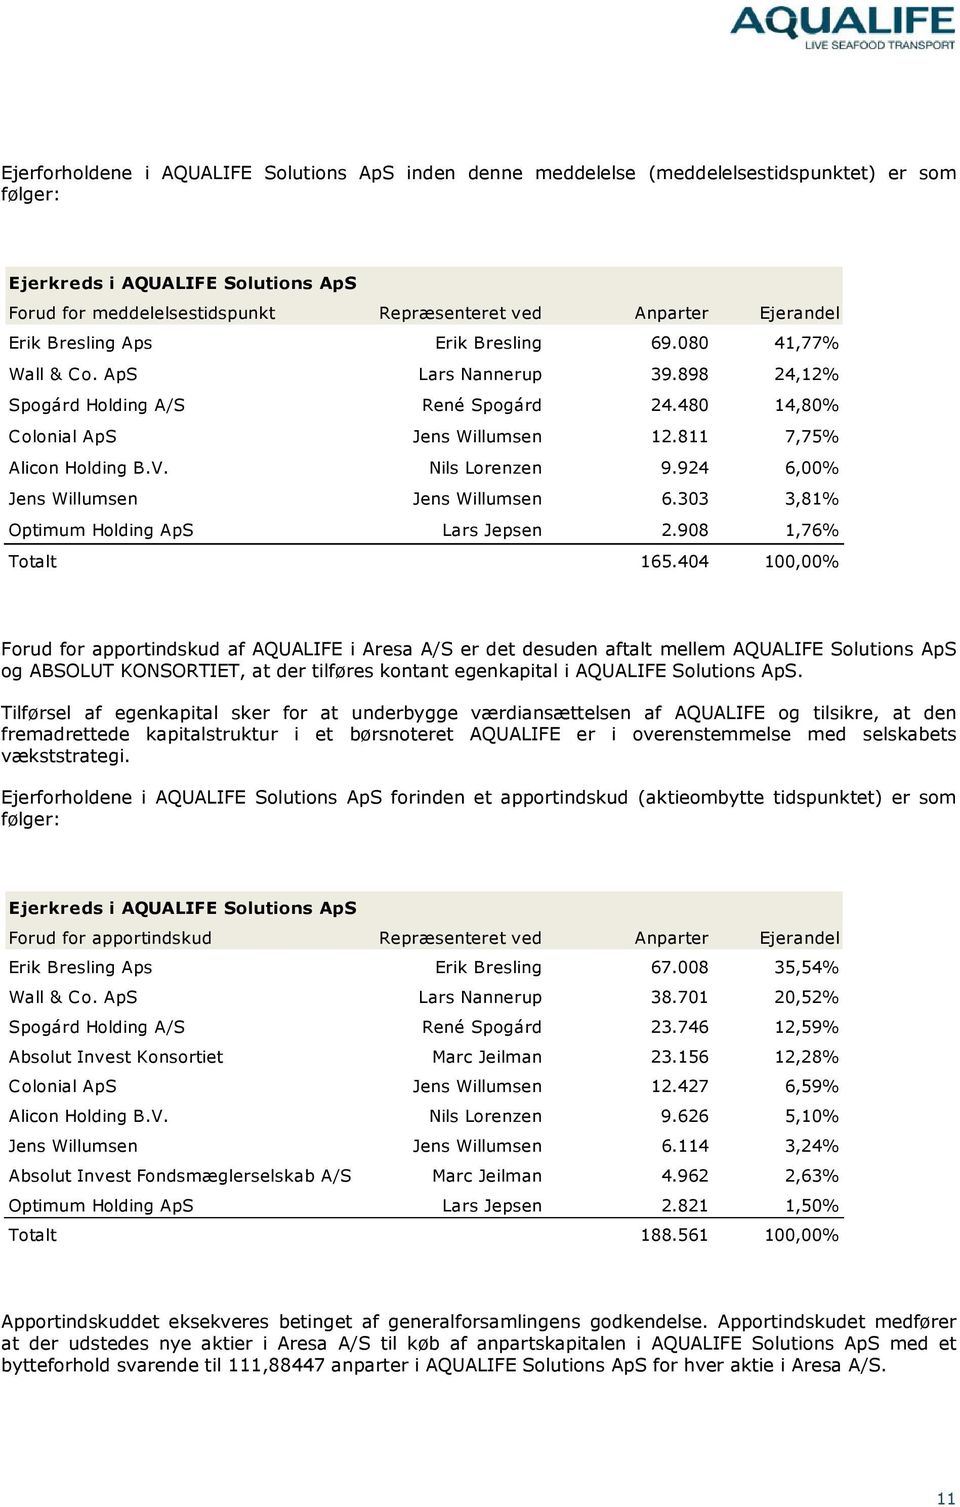 811 7,75% Alicon Holding B.V. Nils Lorenzen 9.924 6,00% Jens Willumsen Jens Willumsen 6.303 3,81% Optimum Holding ApS Lars Jepsen 2.908 1,76% Totalt 165.